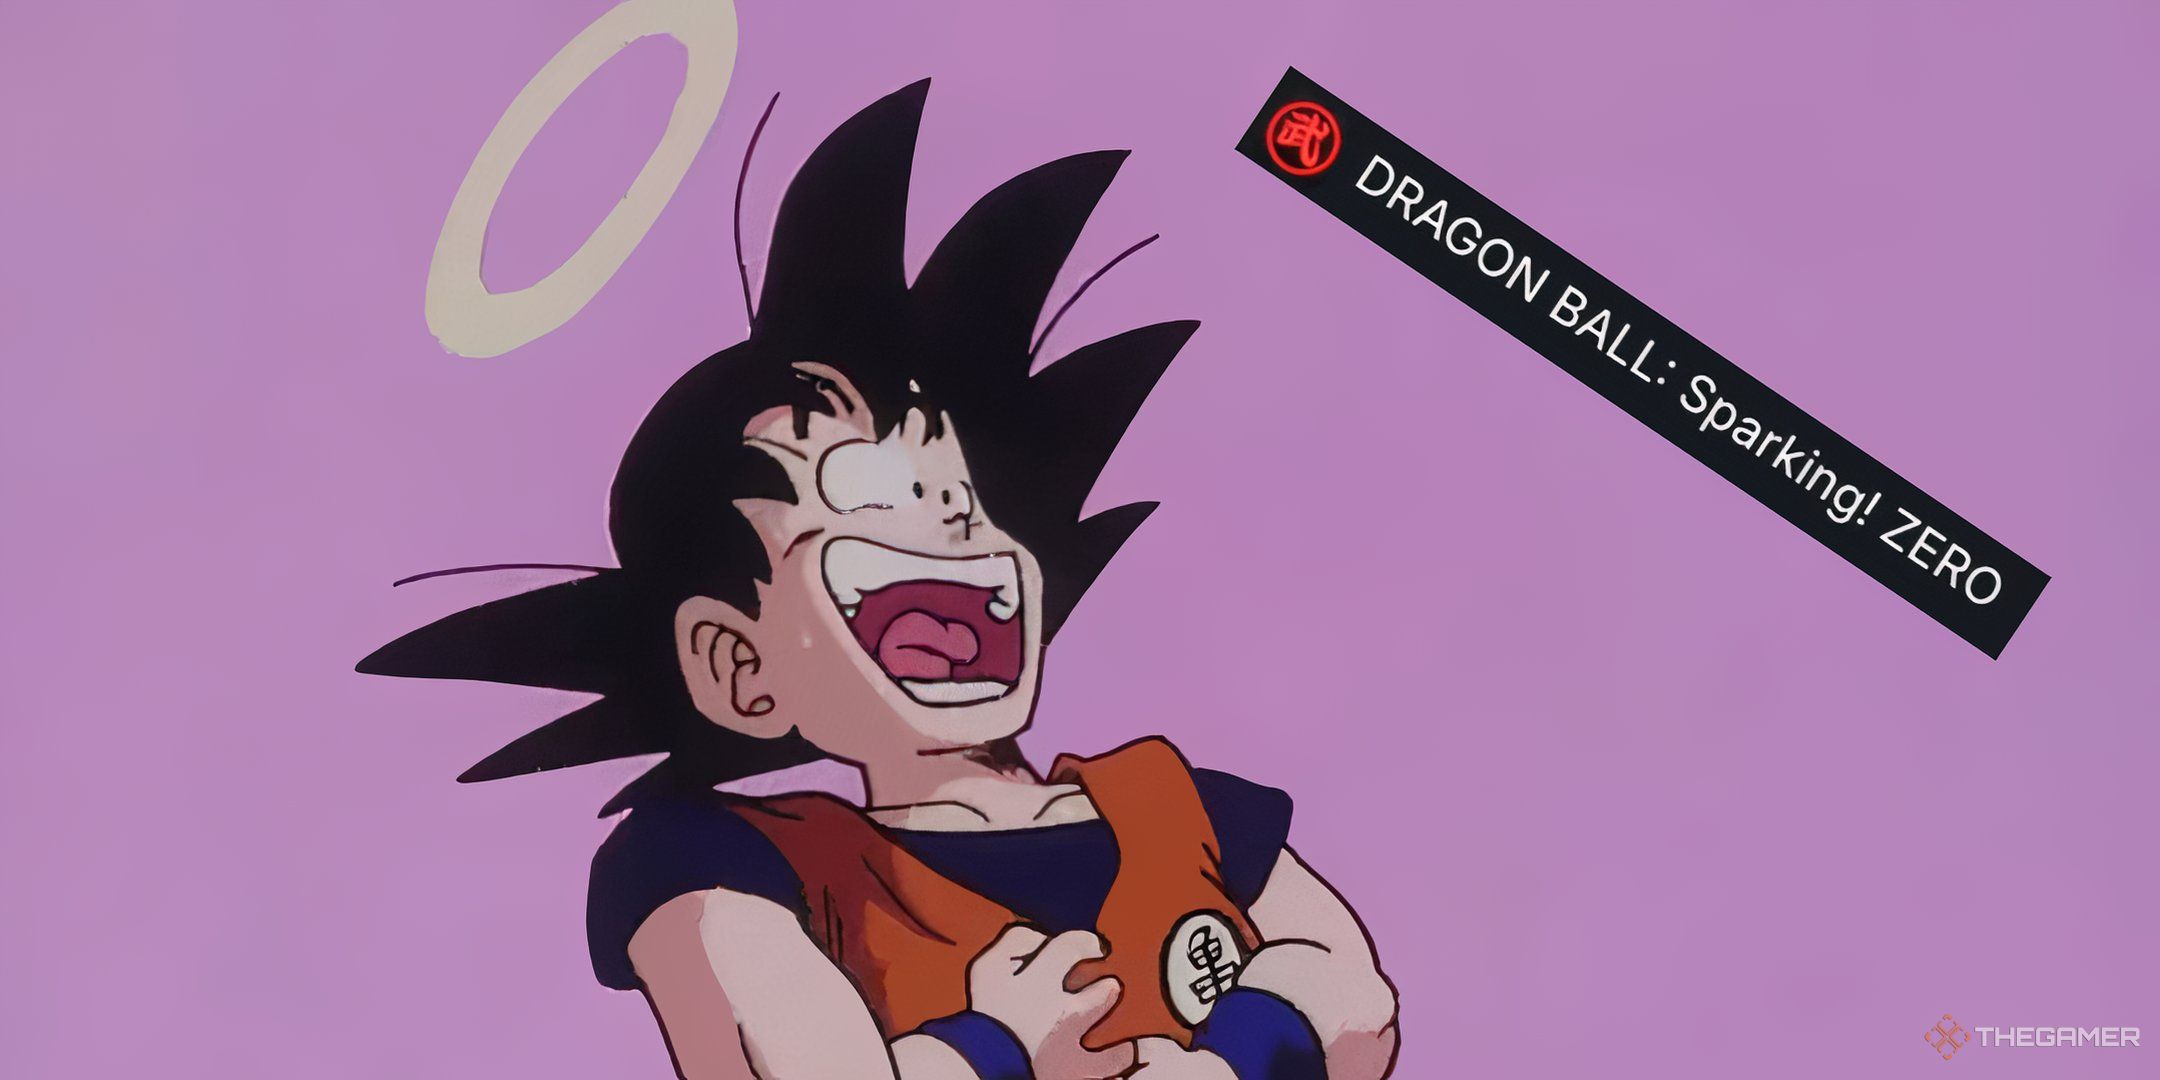 Goku laughing at the Sparking Zero SteamDB logo change.